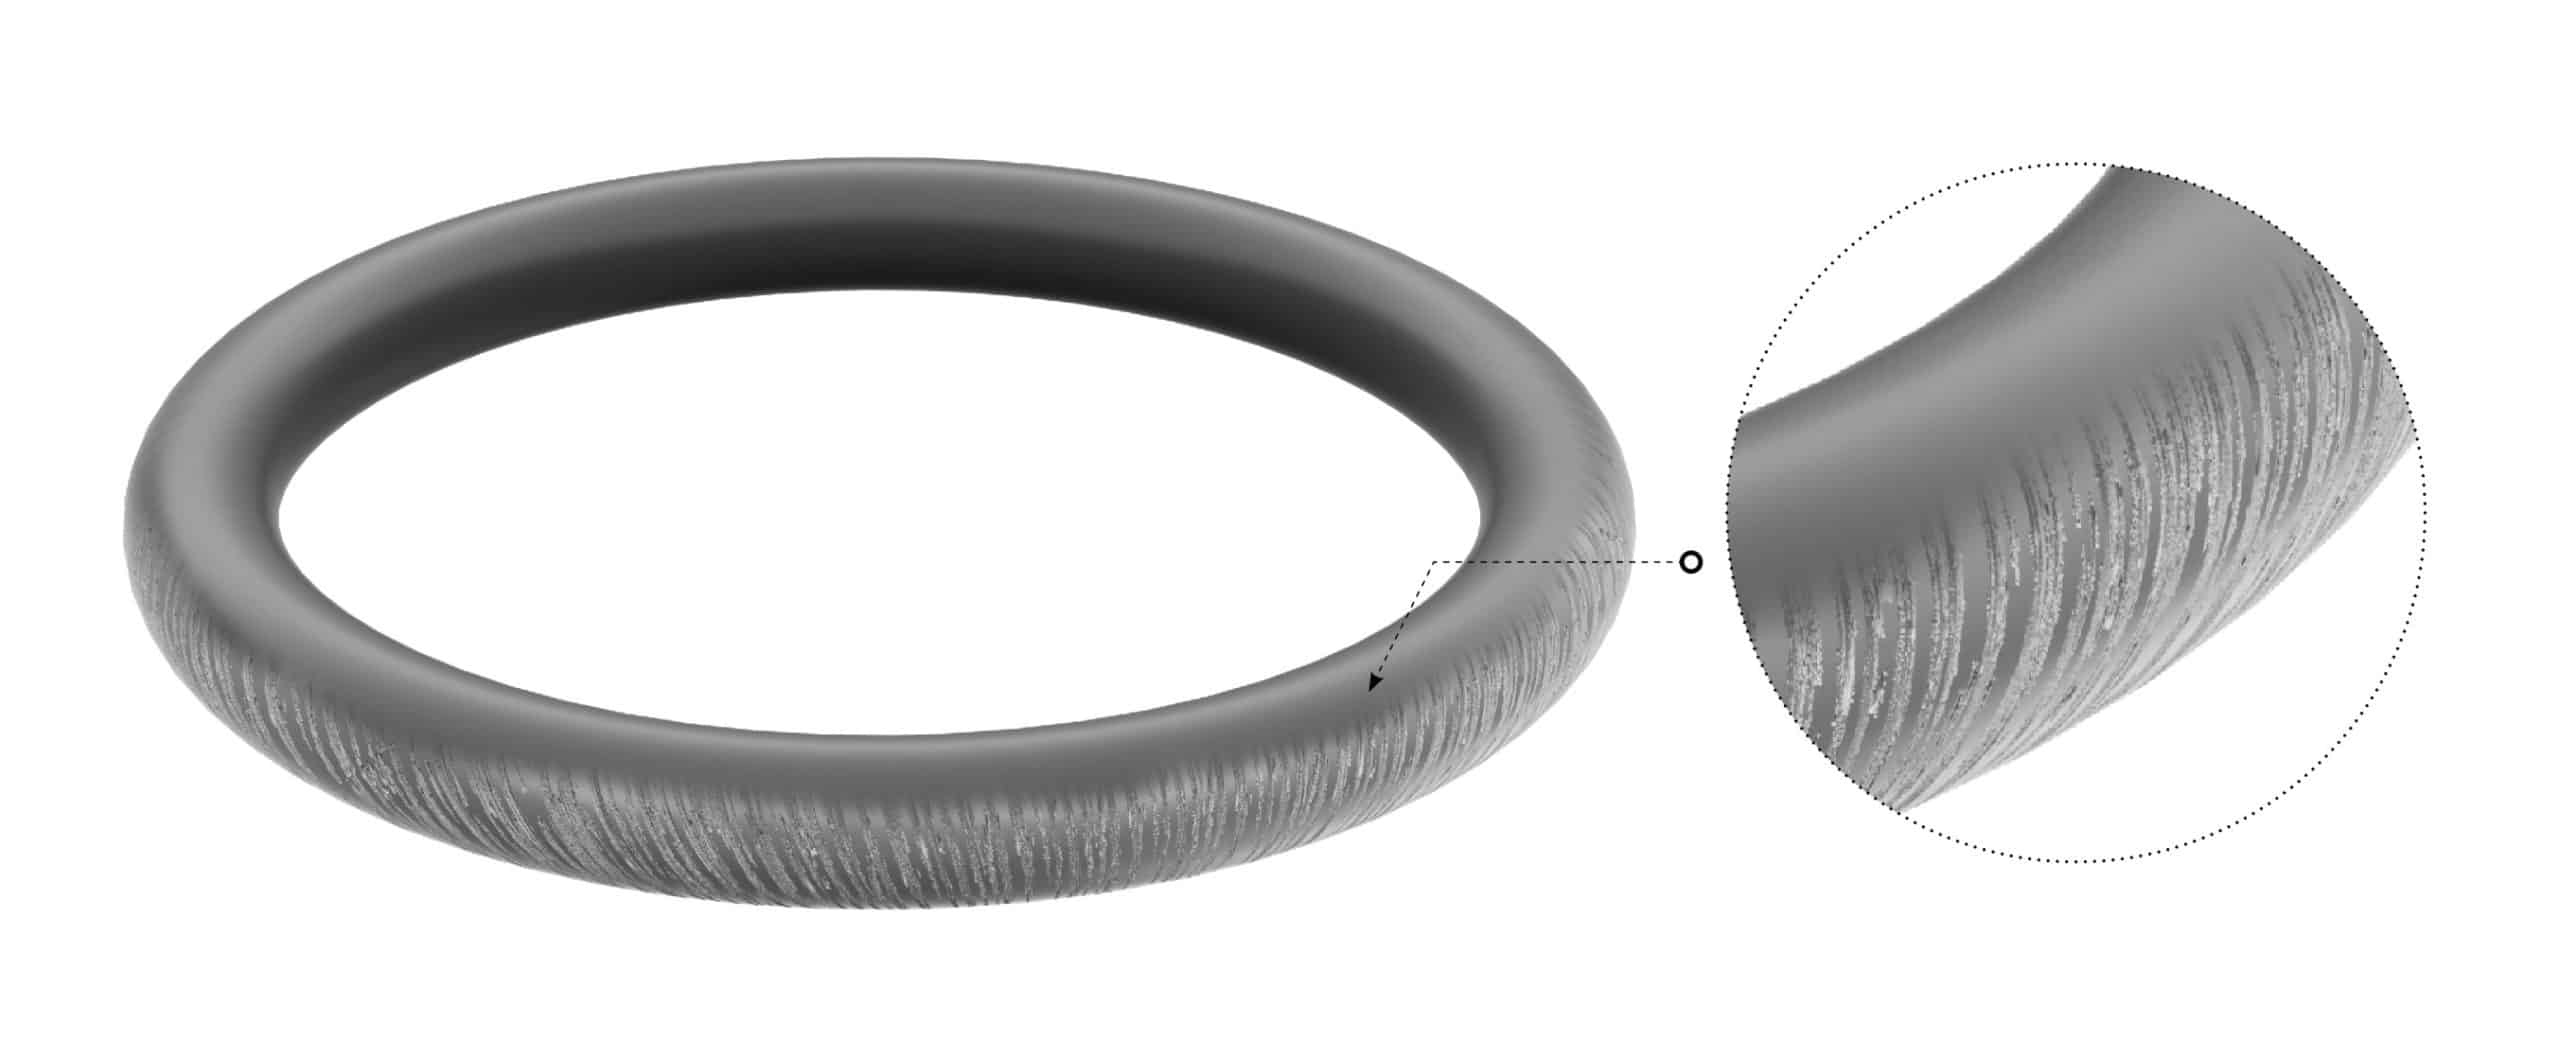 GAPI O/R 98 X 3.5 (Bowl O Ring)